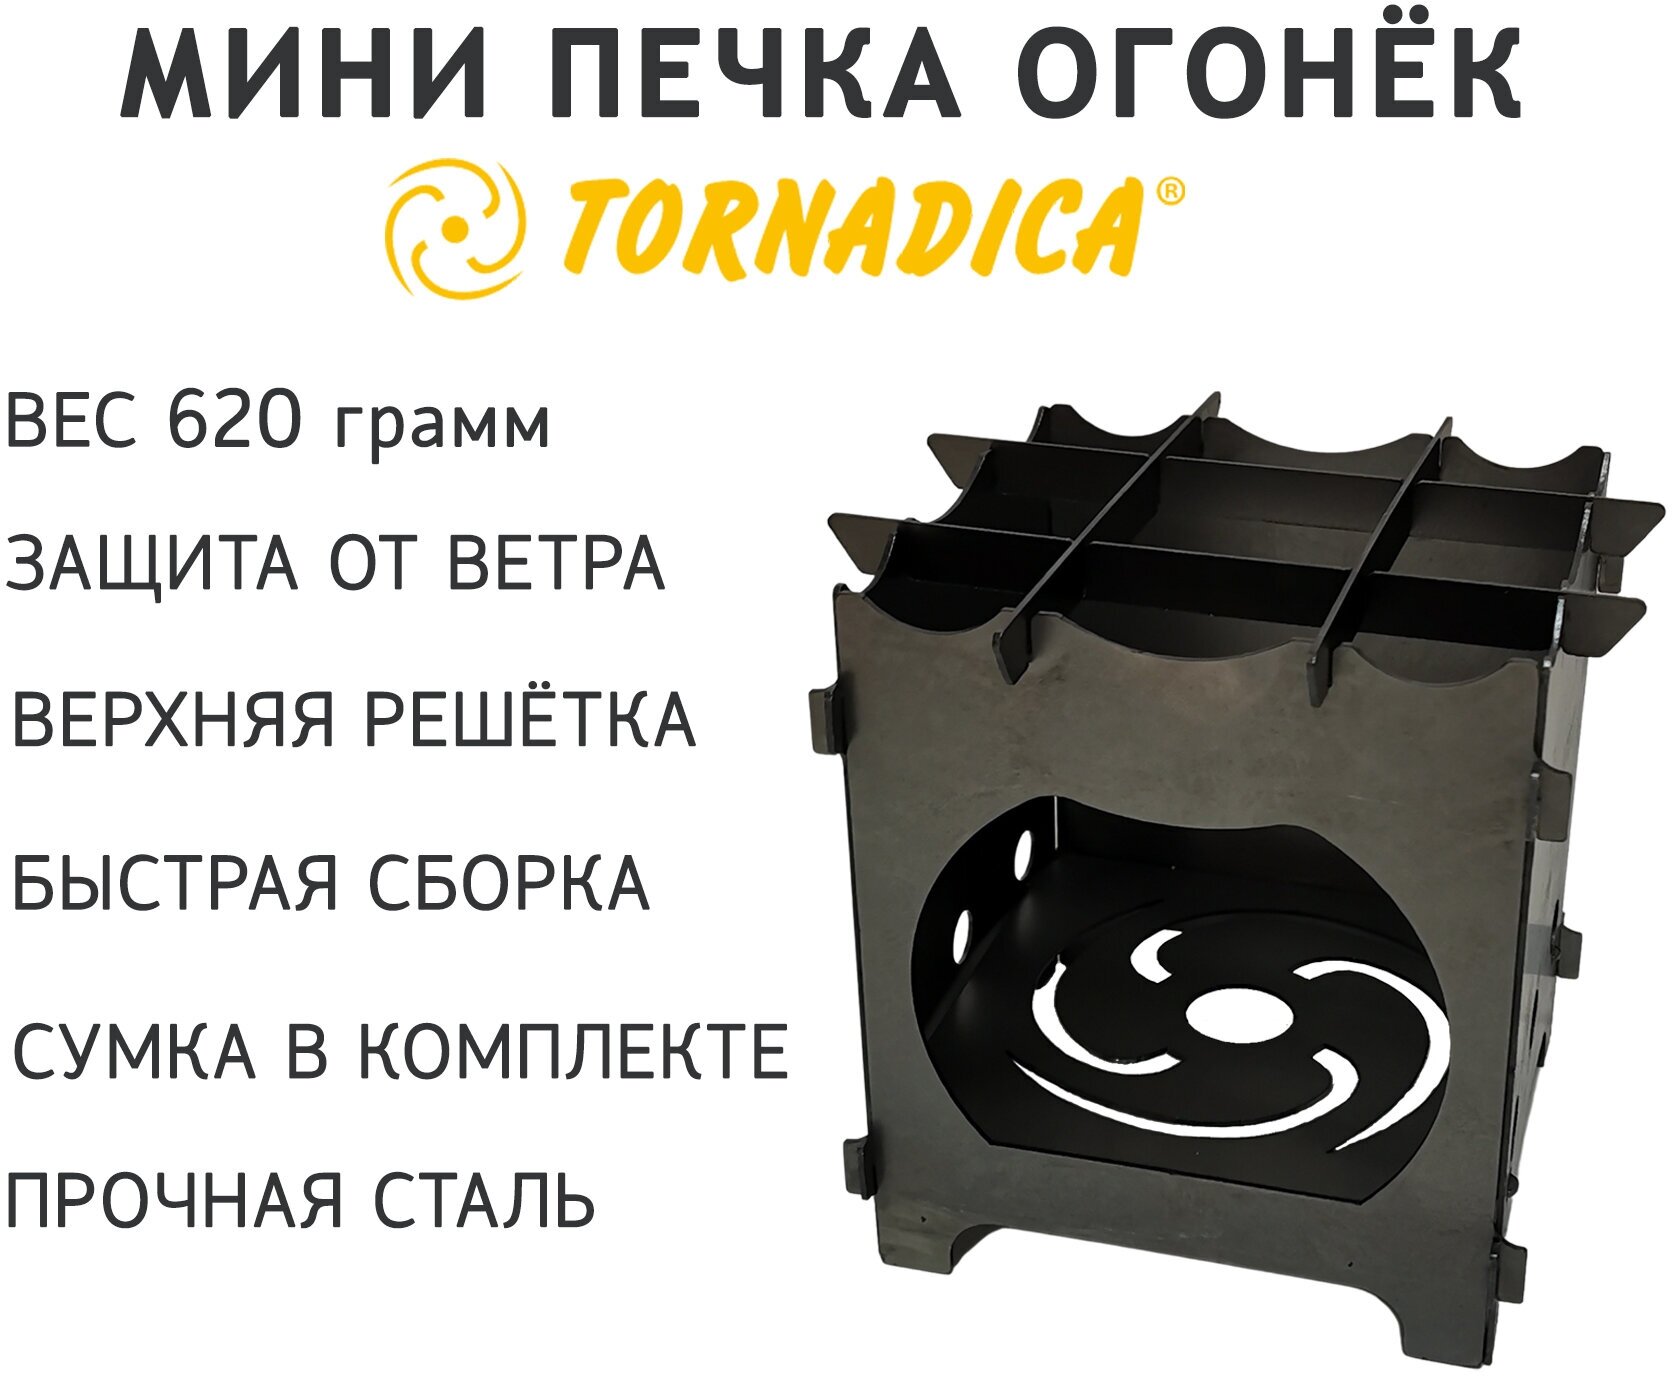 Стальная походная мини-печка Огонёк Tornadica (Торнадика) с сумкой чехлом, печь для туризма, щепочница, выживайка 15 х 12 х 12 см.